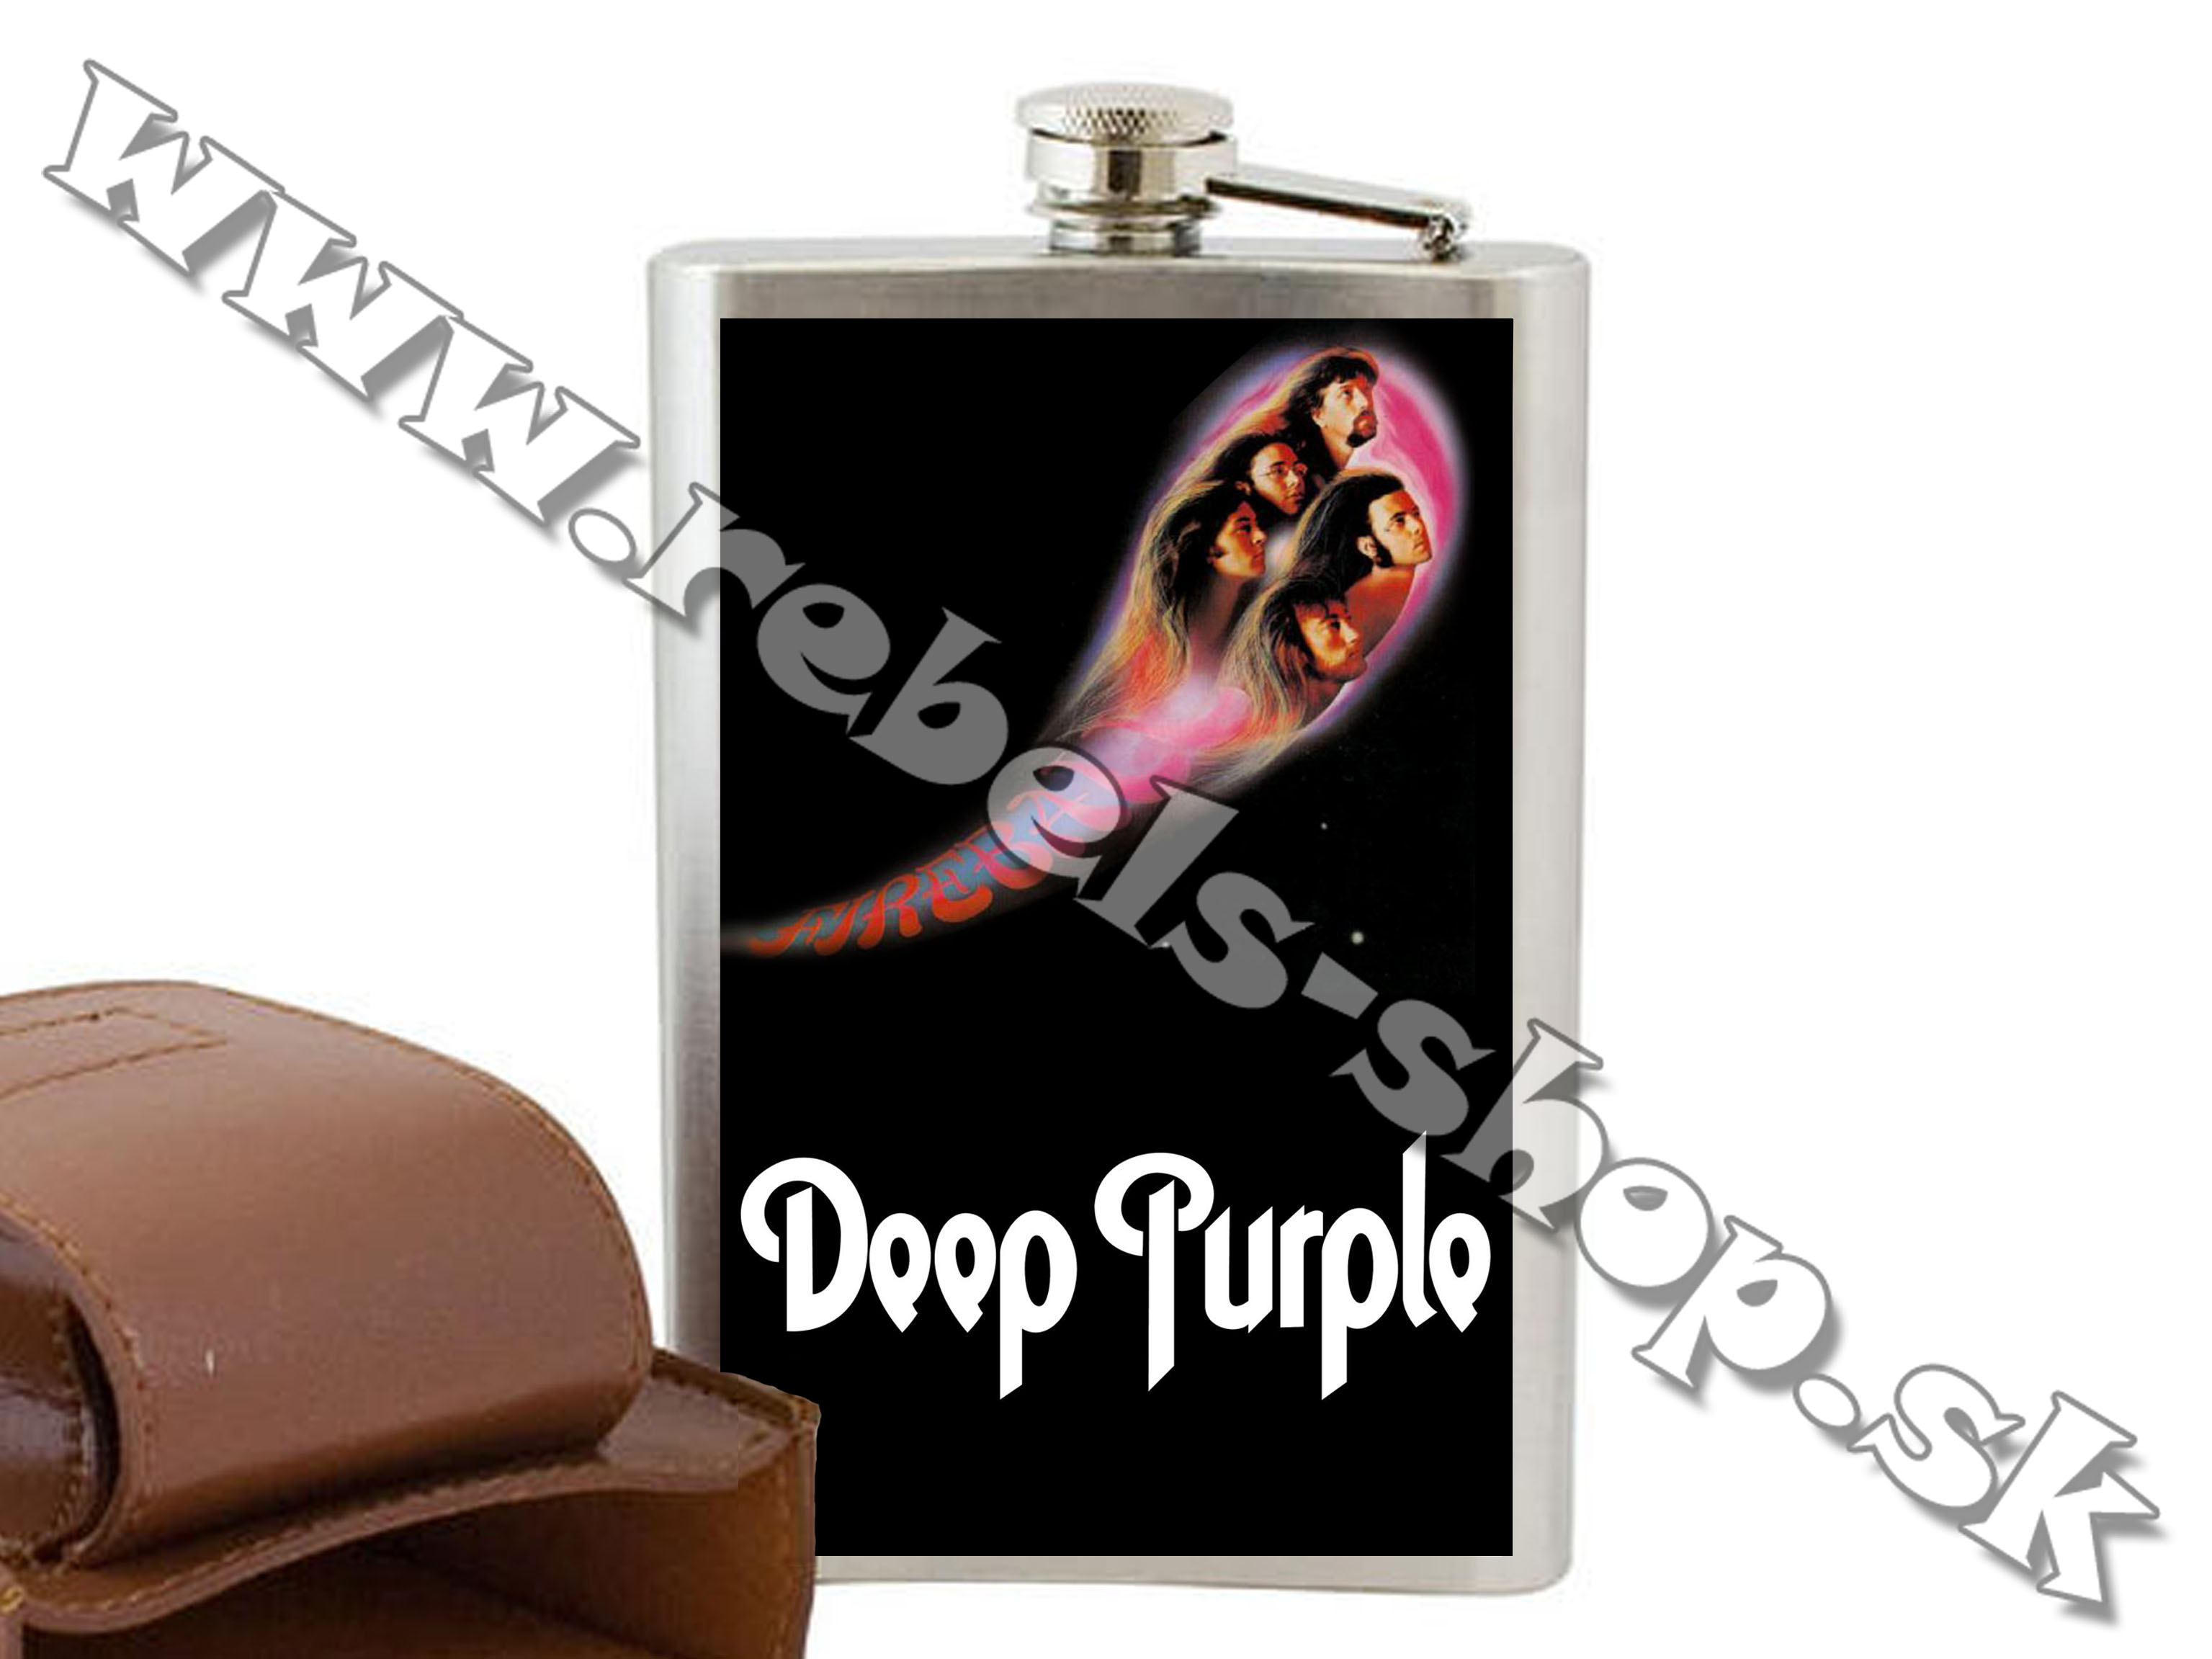 Ploskačka "Deep Purple"